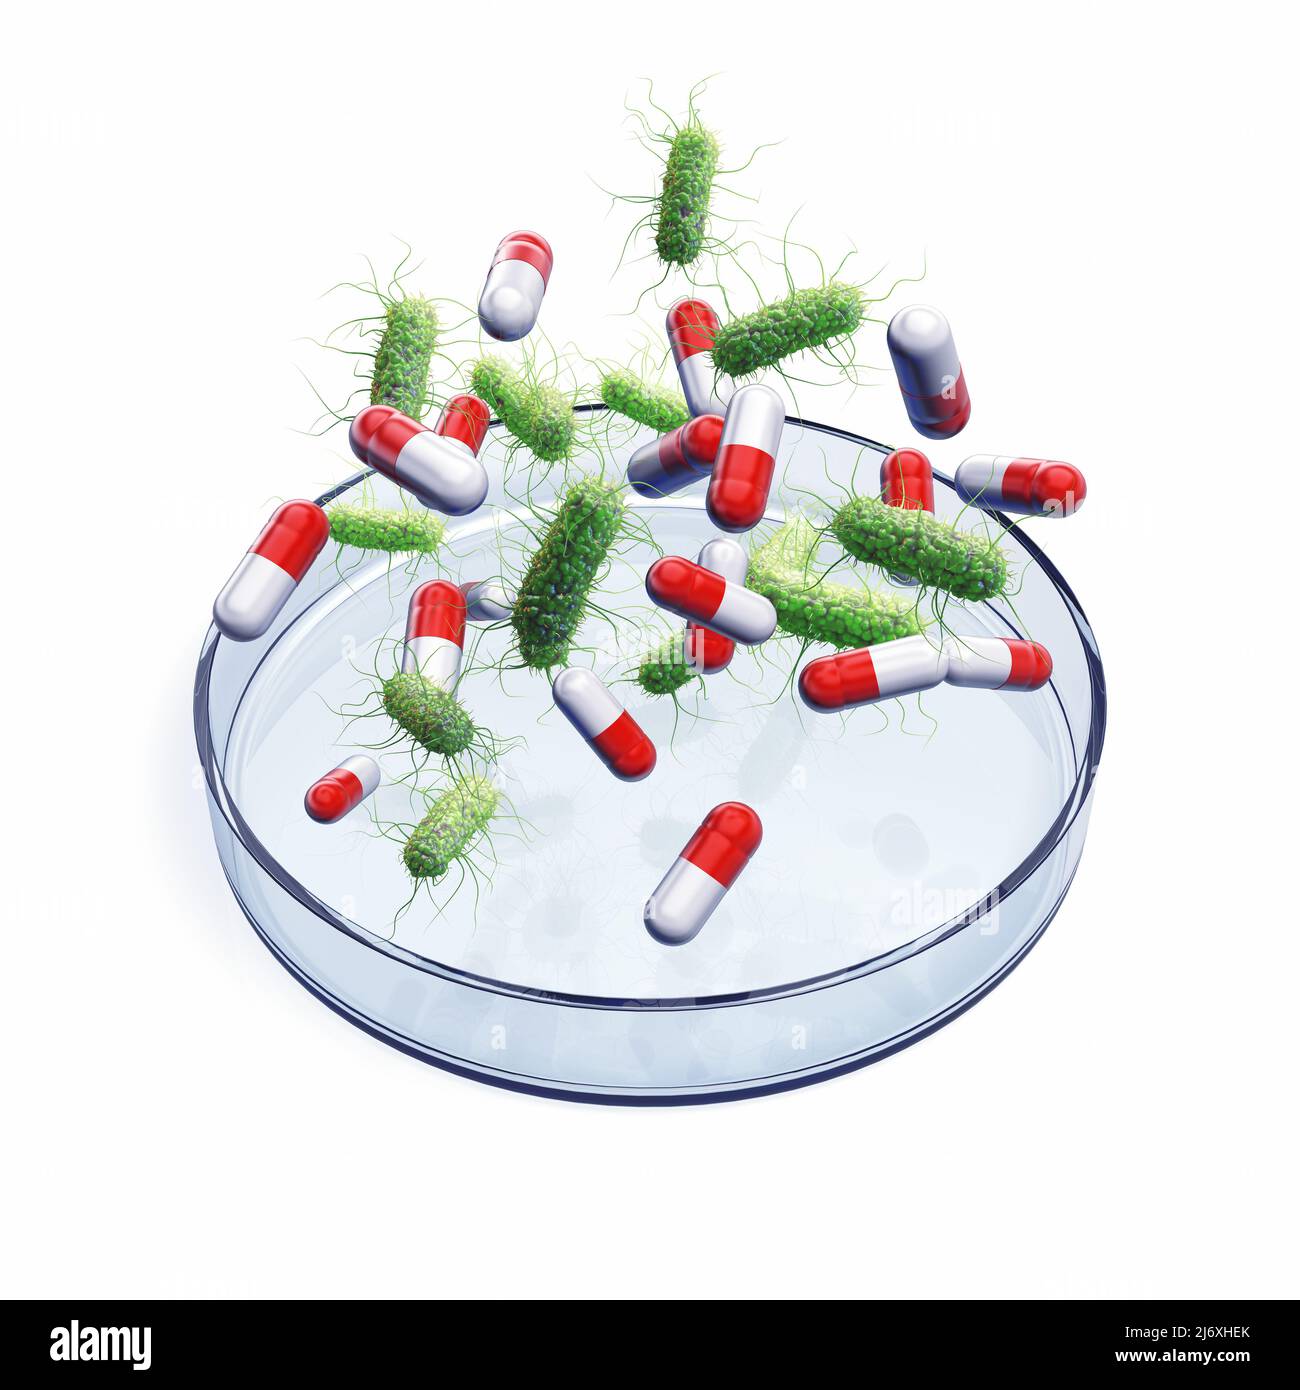 La resistencia antimicrobiana (RAM) ocurre cuando las bacterias ya no responden a los medicamentos. Bacterias y cápsulas sobre placa de Petri aisladas sobre blanco Foto de stock